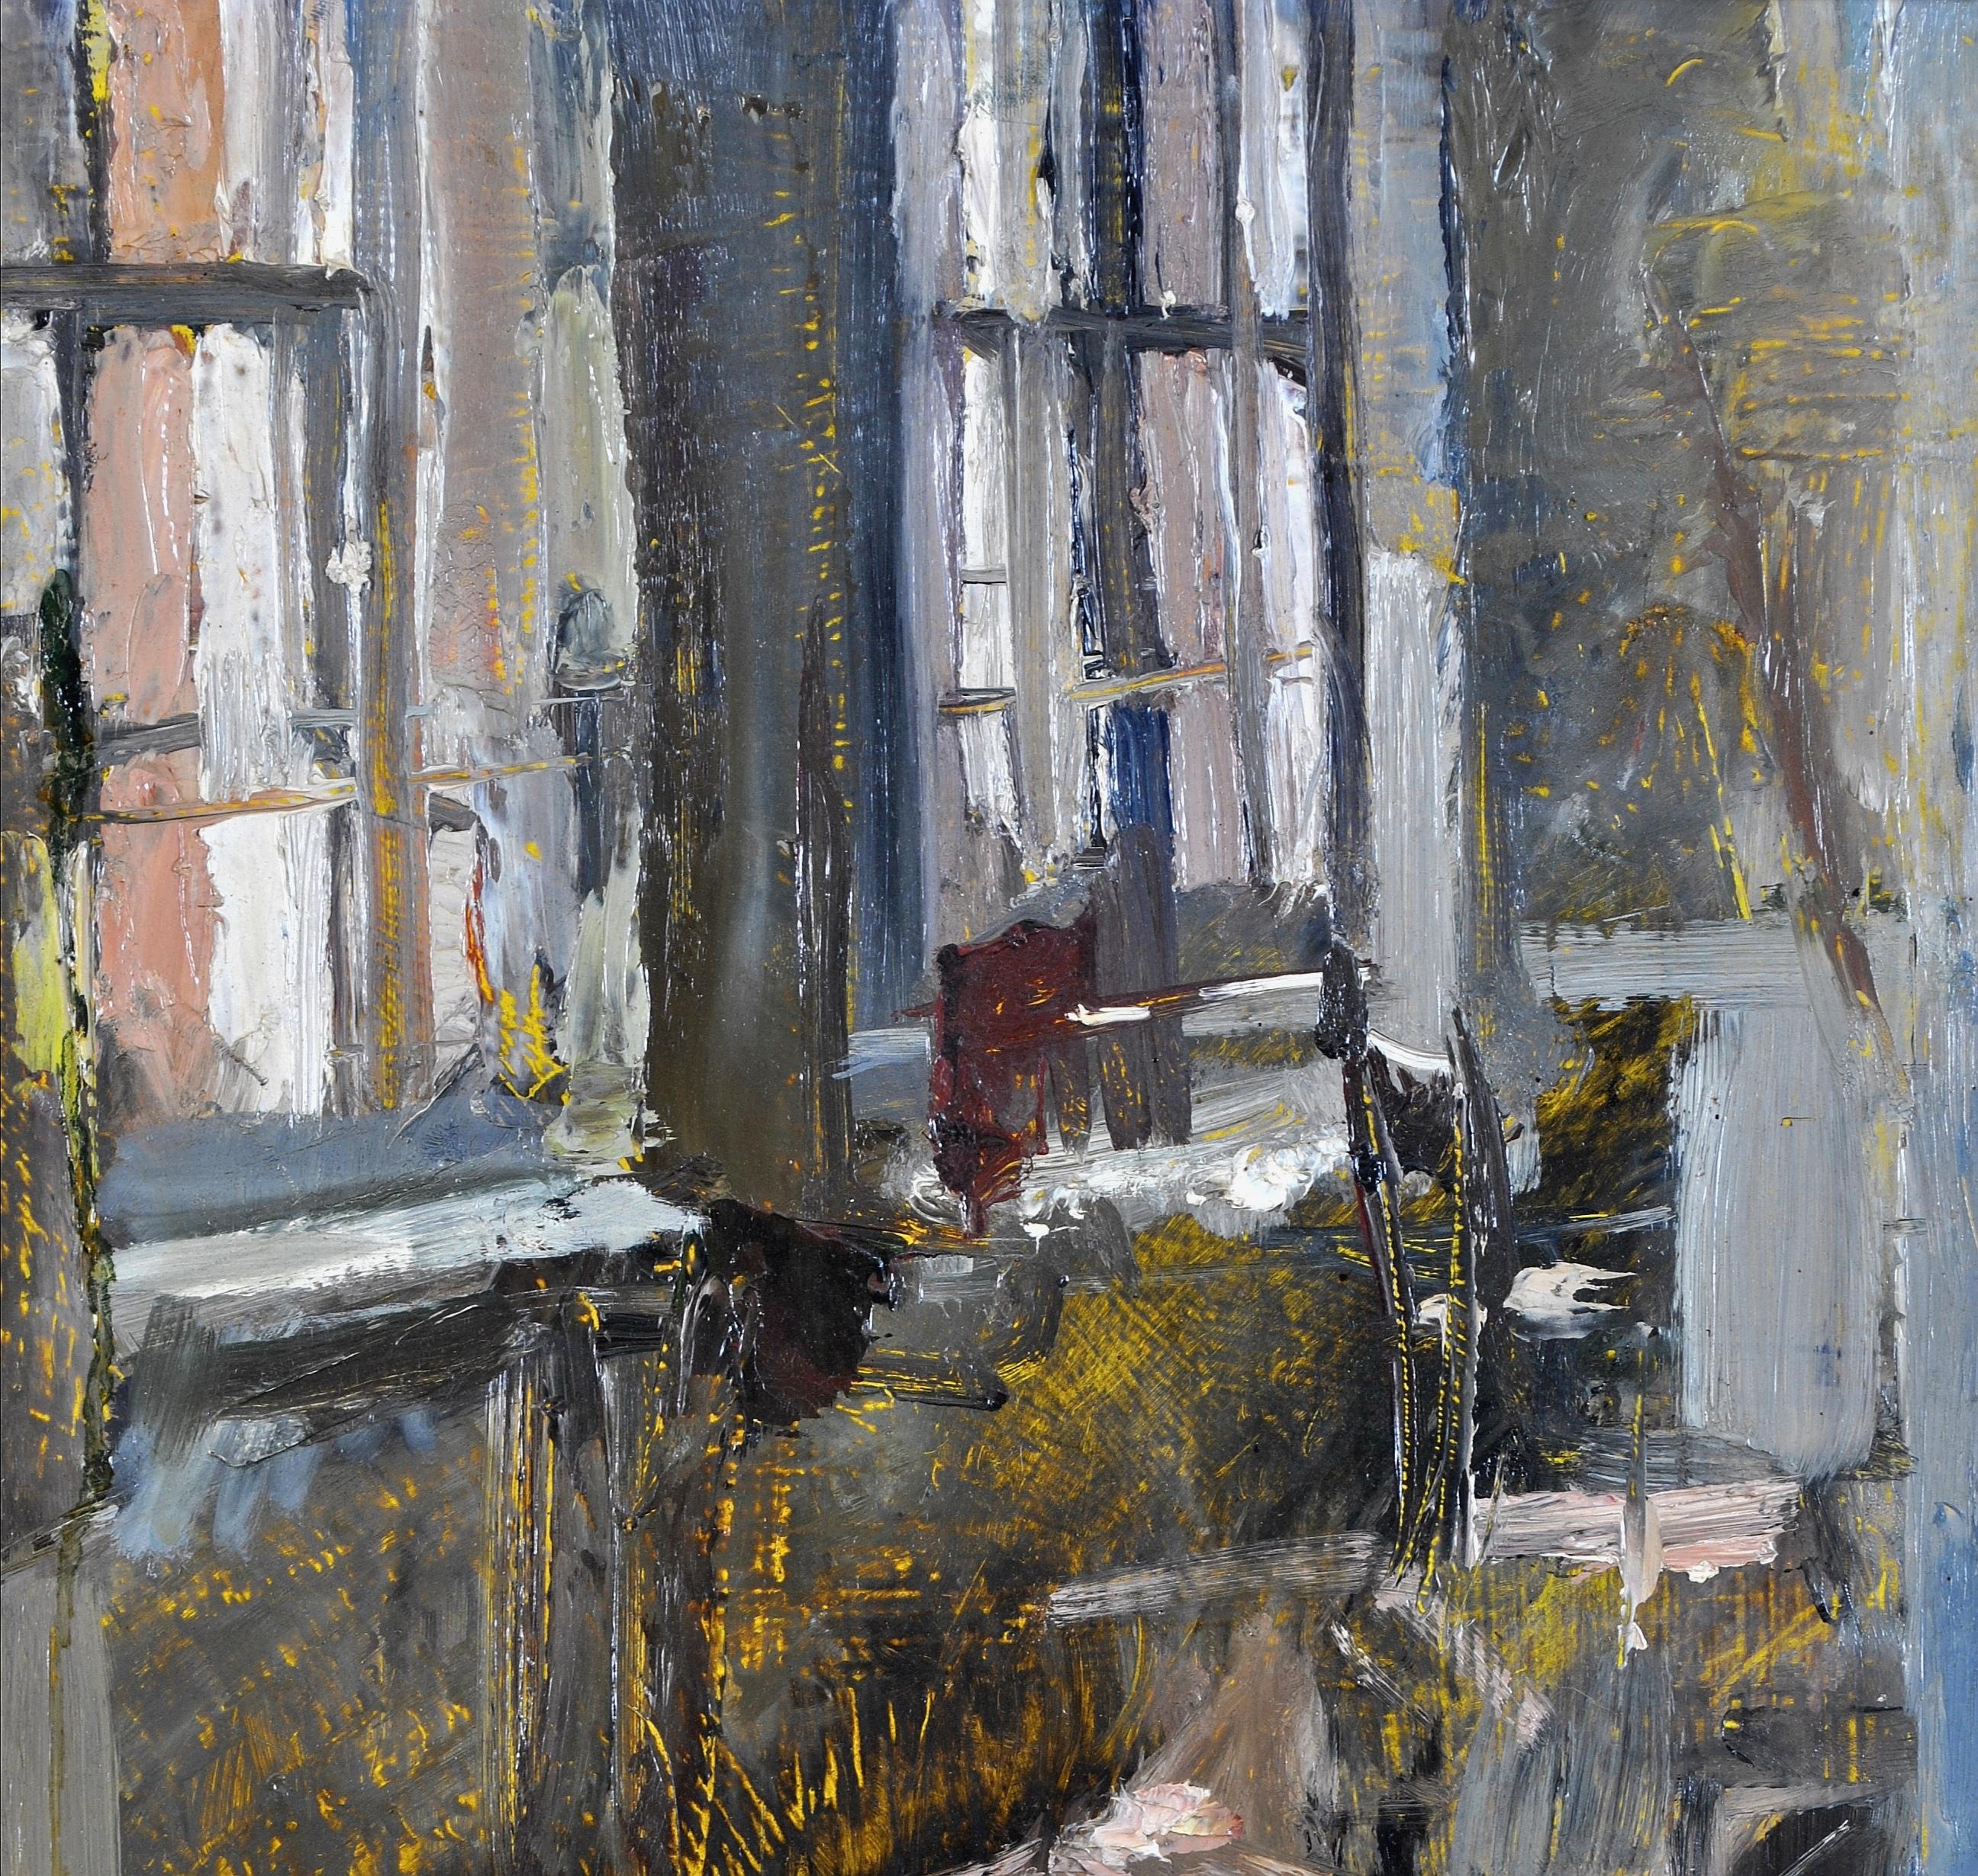 Magnifique huile sur panneau de Lord Paul Ayshford Artistics, datant de 1950, représentant l'atelier de l'artiste avec la lumière pénétrant à travers deux grandes fenêtres à guillotine. 

L'œuvre a été méticuleusement construite avec de nombreuses